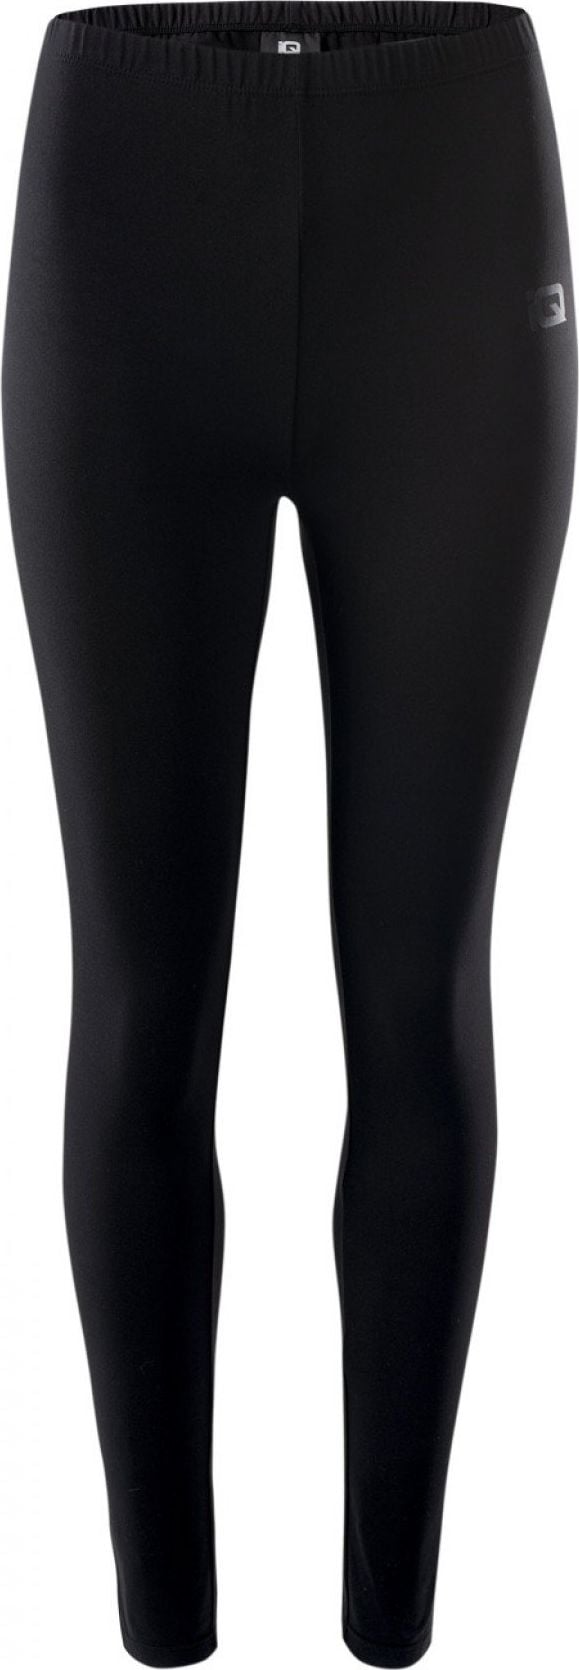 Colanti leggings sport fitness yoga IQ Silky W, marimea XL, negru